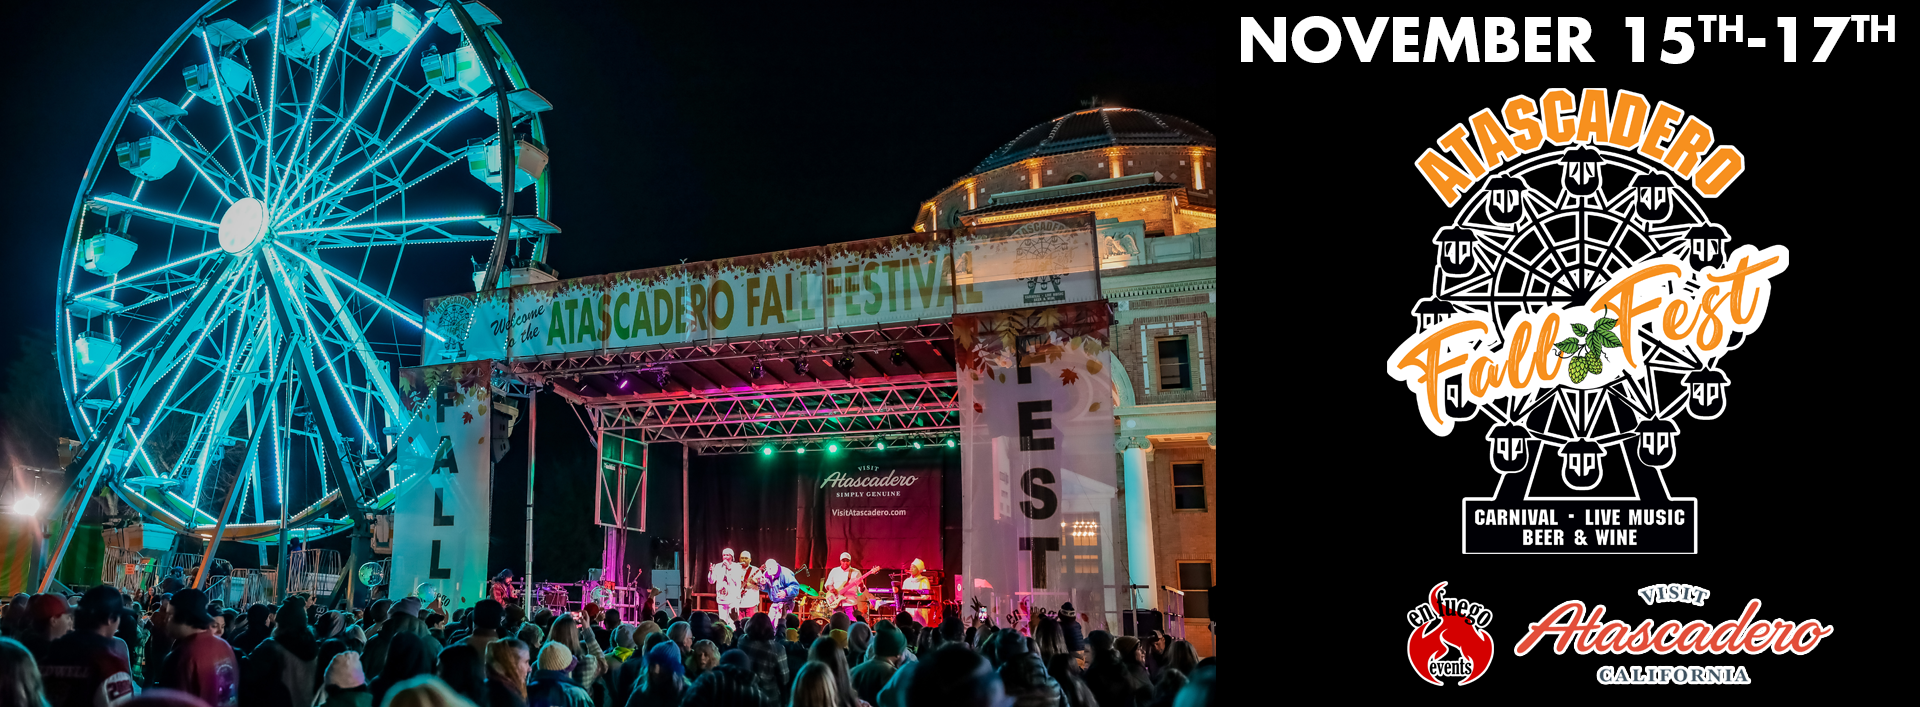 Atascadero Fall Festival 